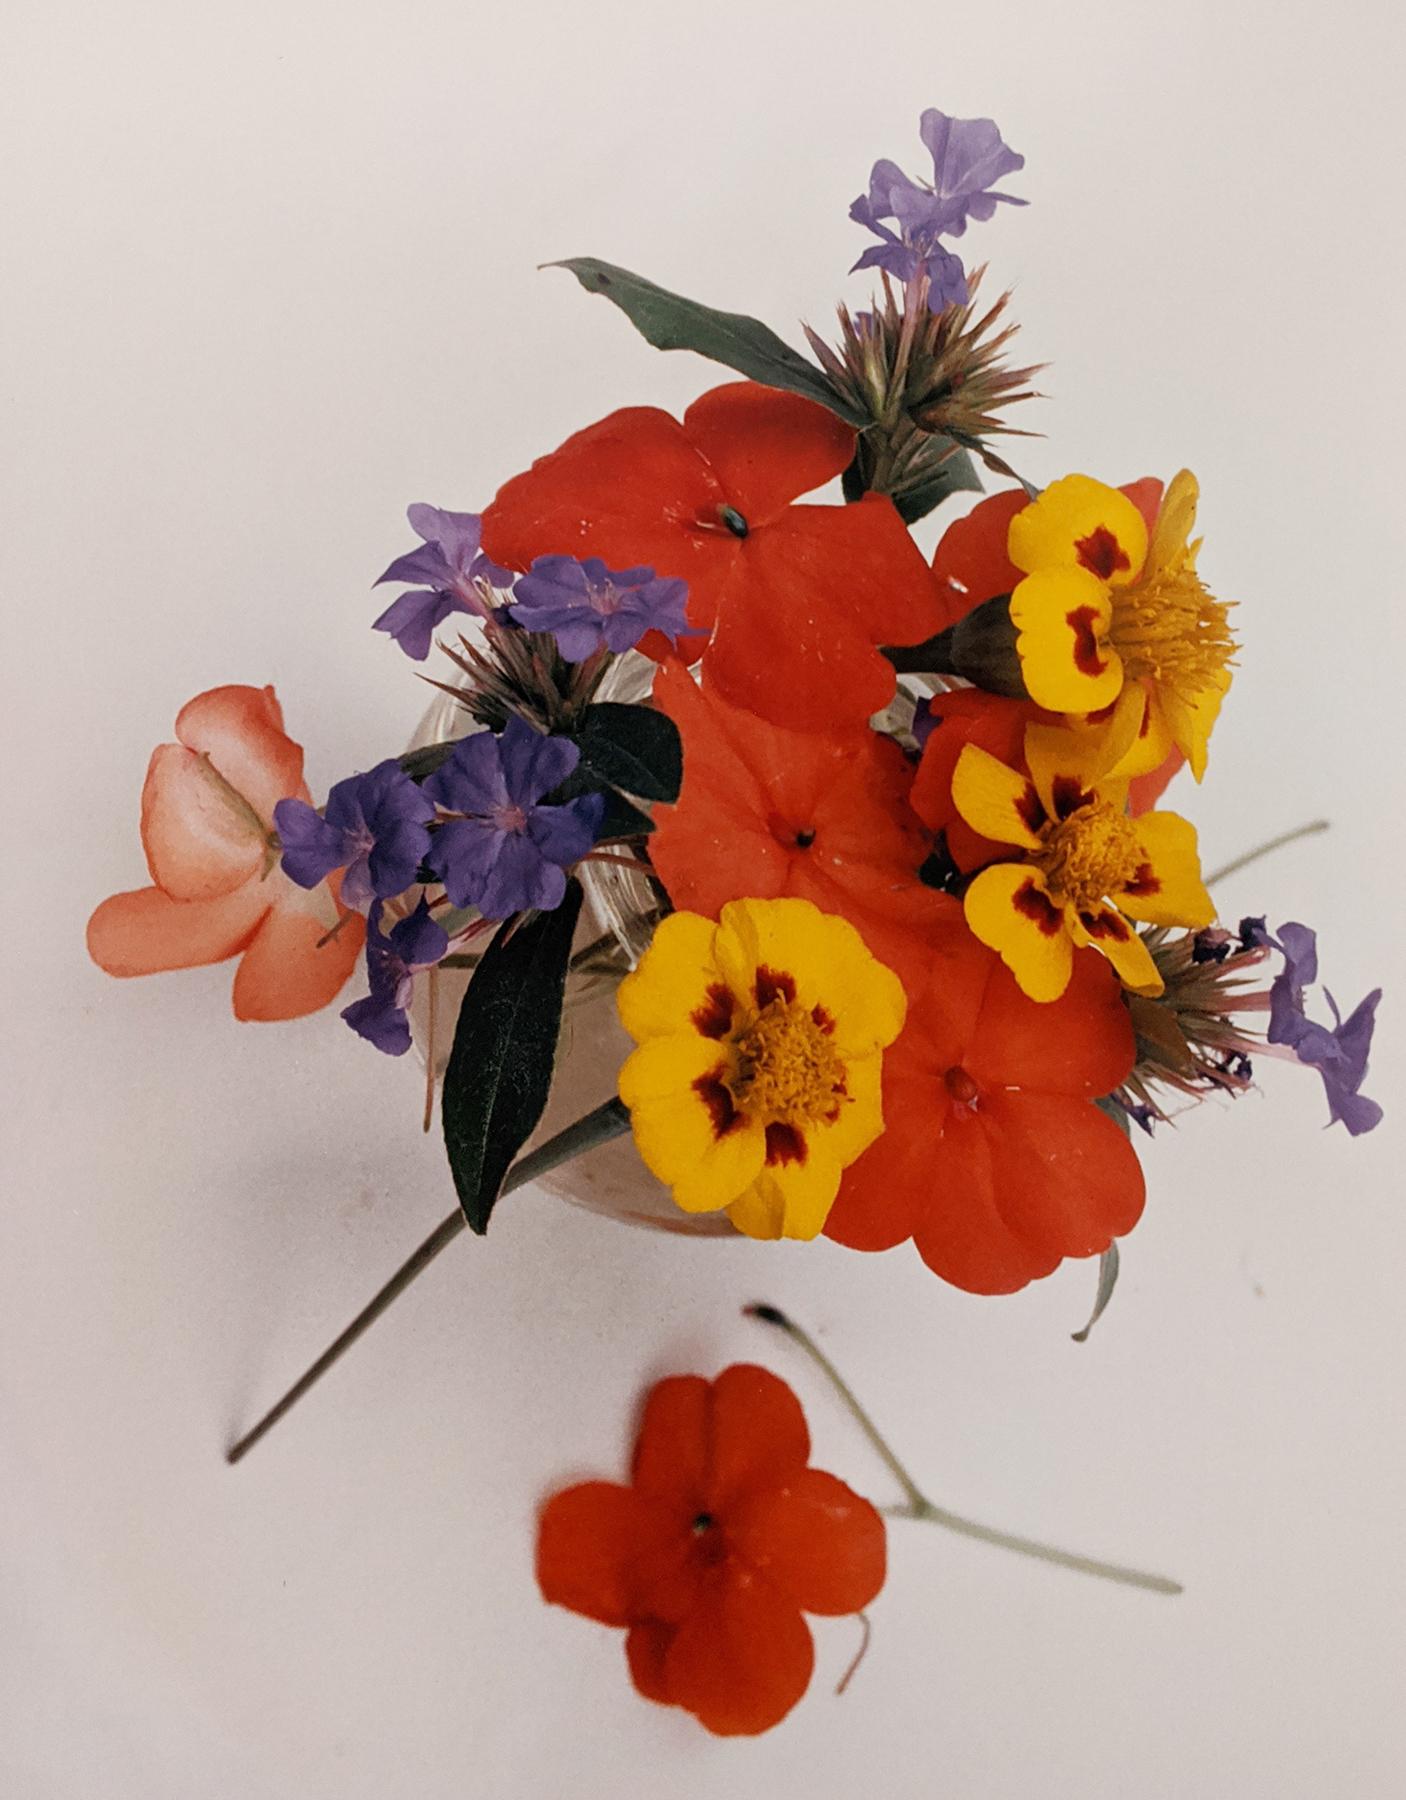 Horst P. Horst Color Photograph - Marigolds, Impatiens, and Violets, c. 1985